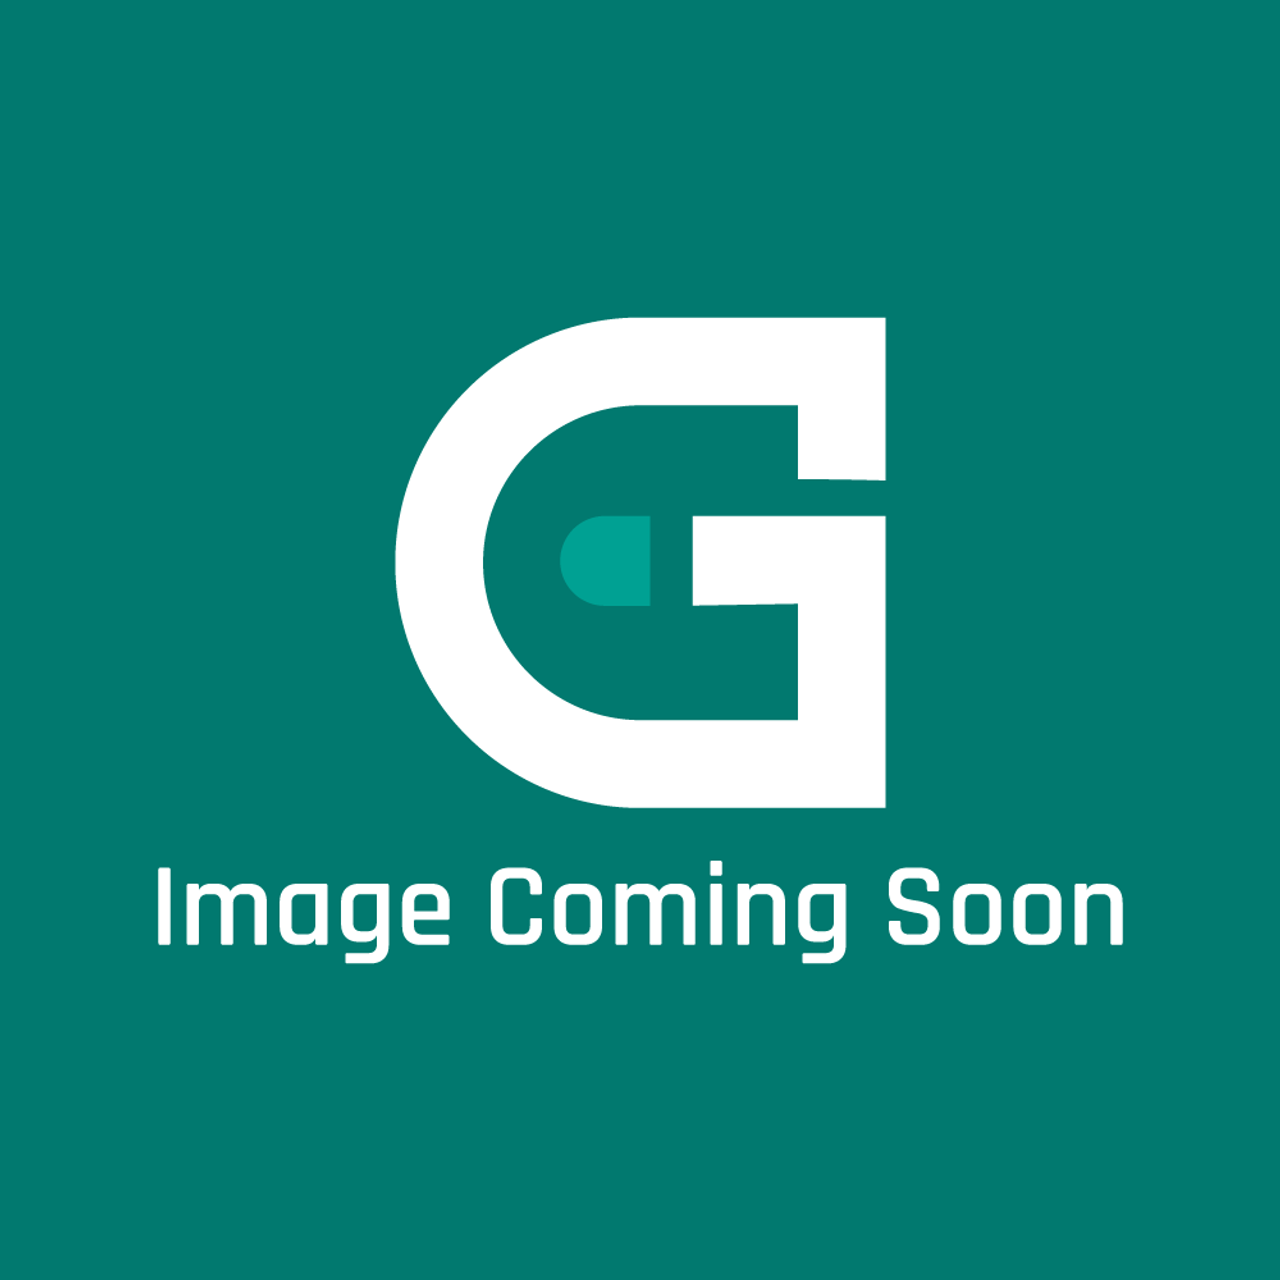 Frigidaire - Electrolux FF17CSVG Gallery Refrig Cros - Image Coming Soon!